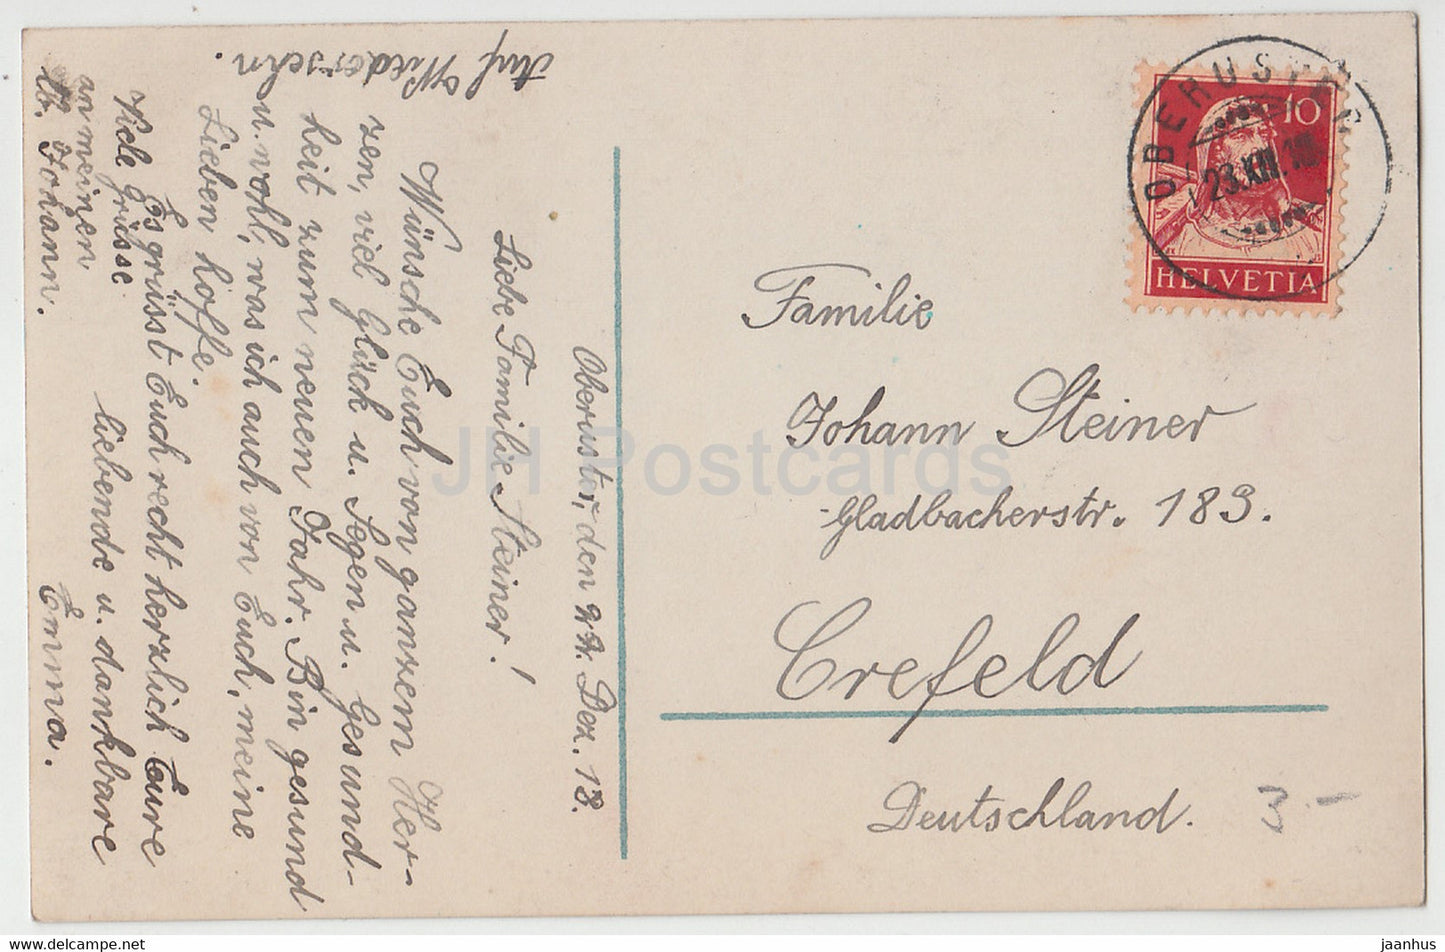 New Year Greeting Card - Viel Gluck im Neuen Jahr - boy - R K L 7147/2 - old postcard - 1918 - Germany - used